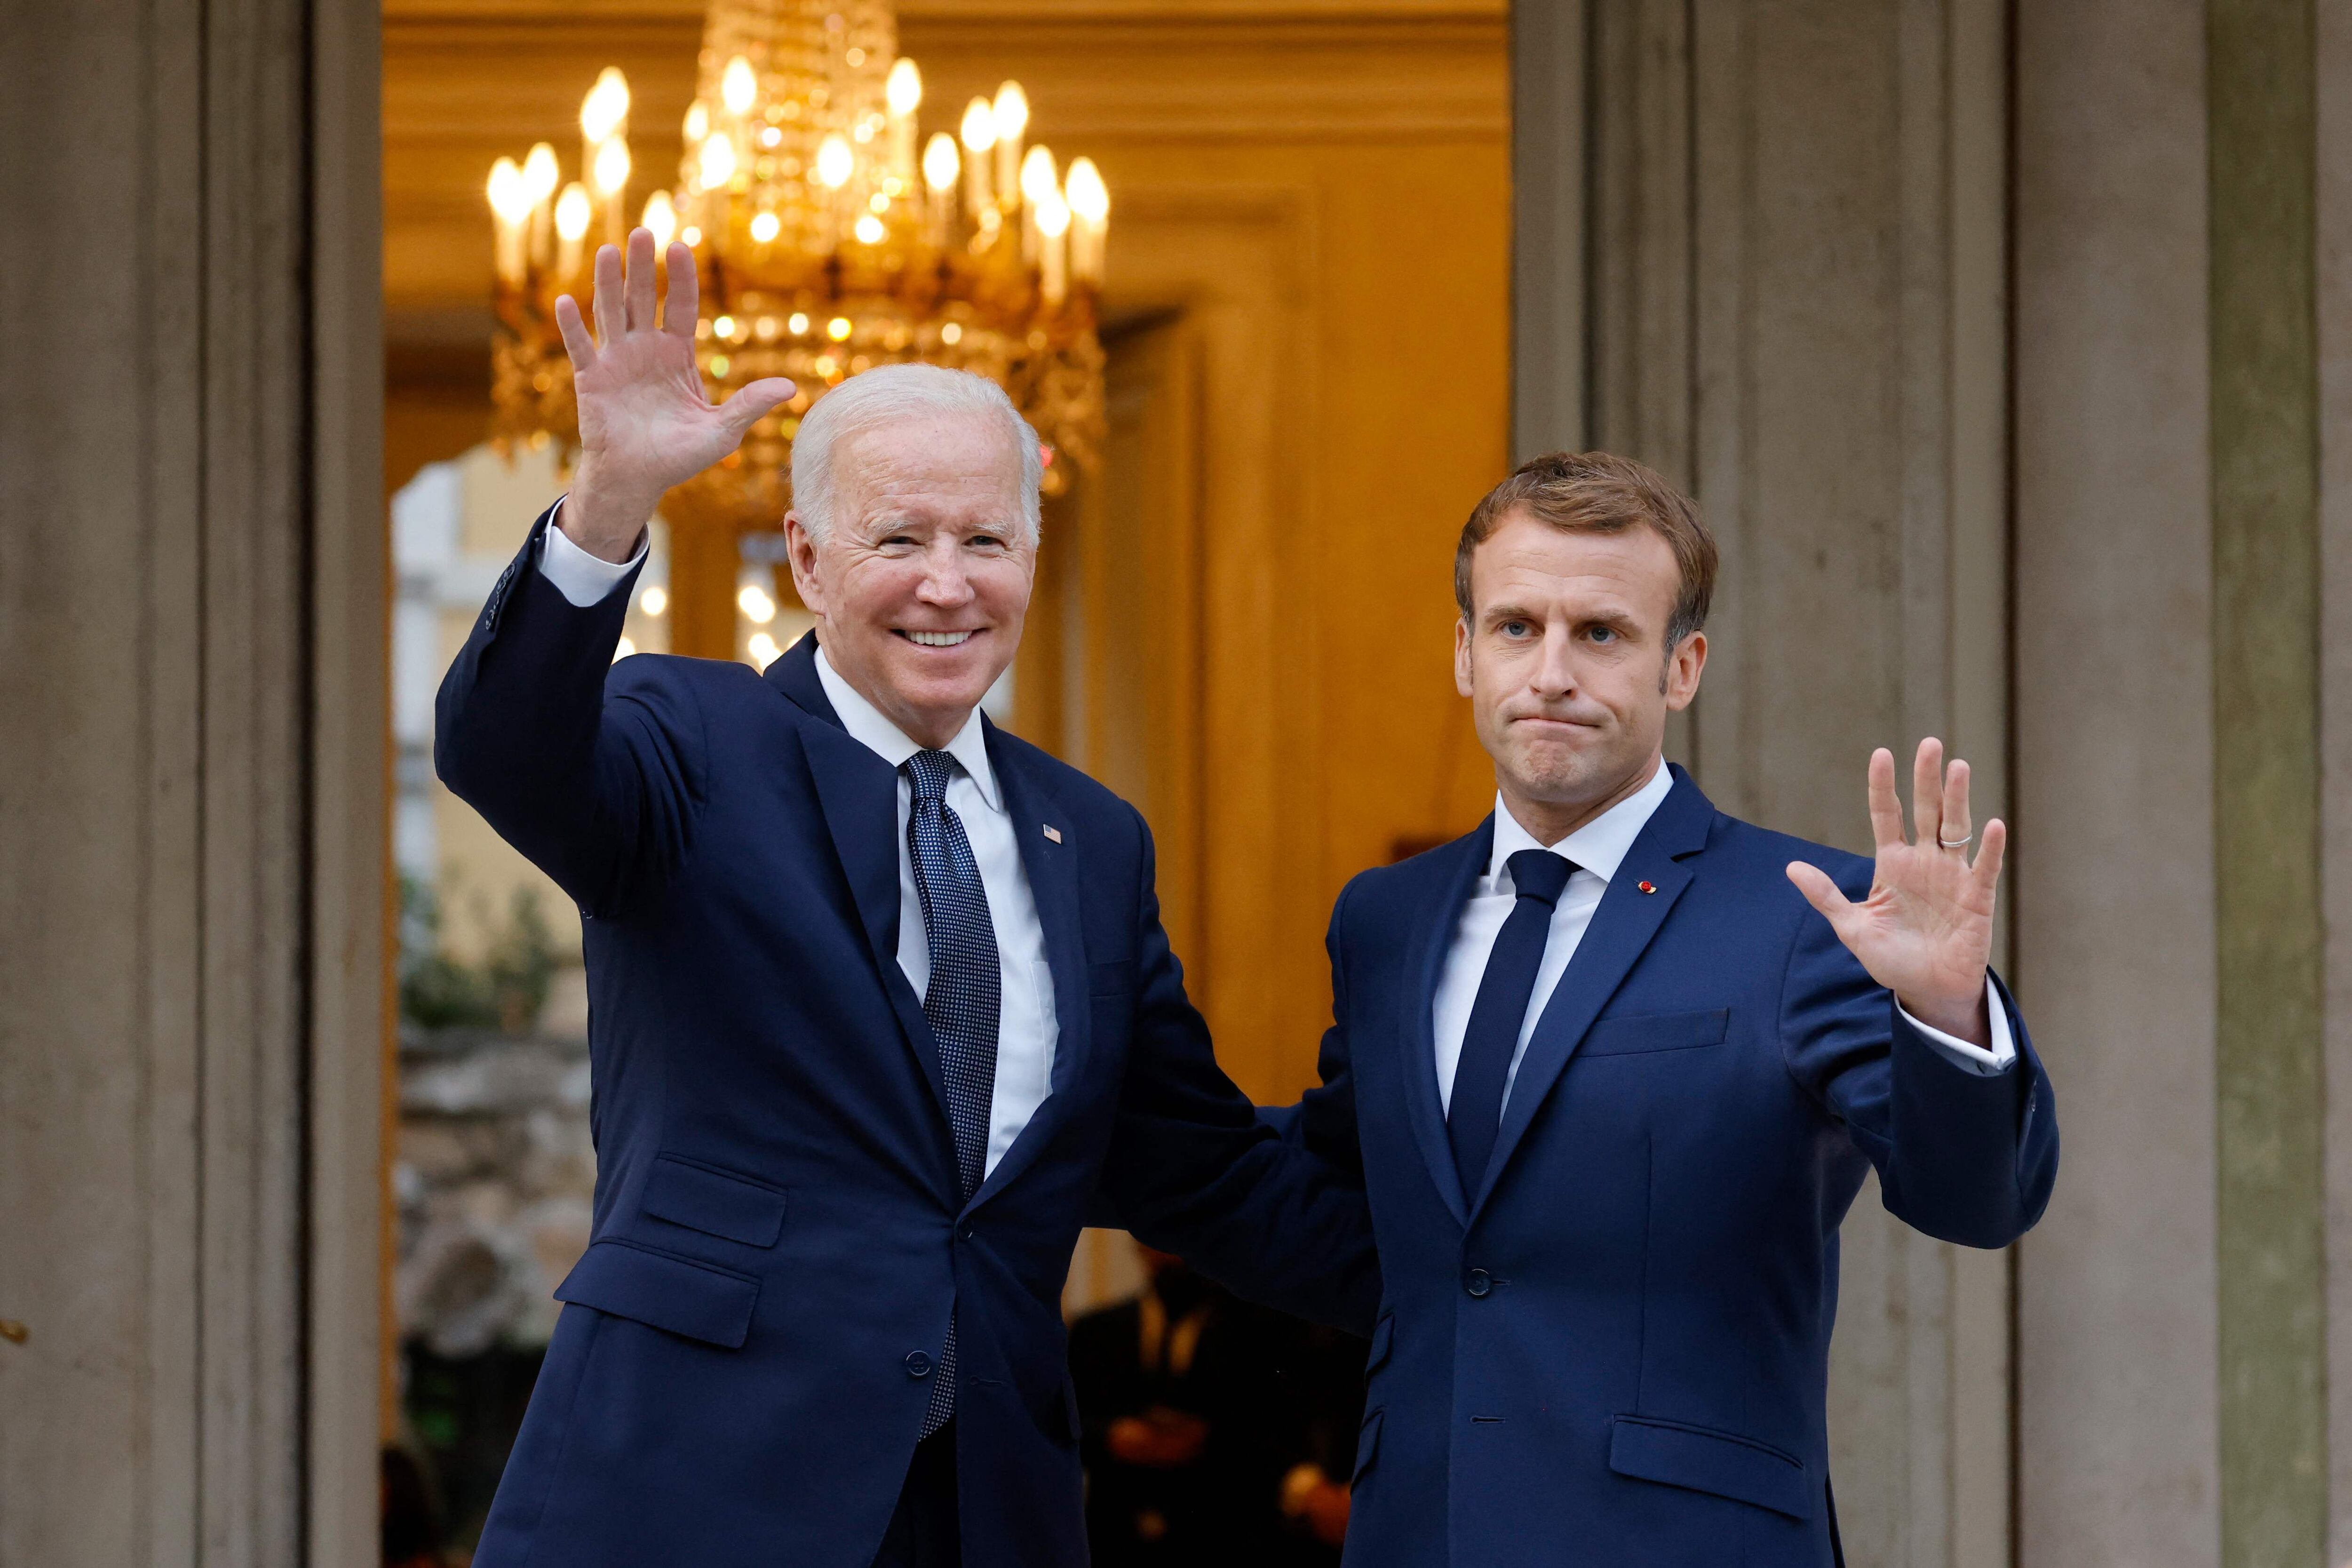 Emmanuel Macron, presidente de Francia, y Joe Biden, presidente de los Estados Unidos, sostienen conversaciones con frecuencia. (Foto: Ludovic MARIN / AFP)